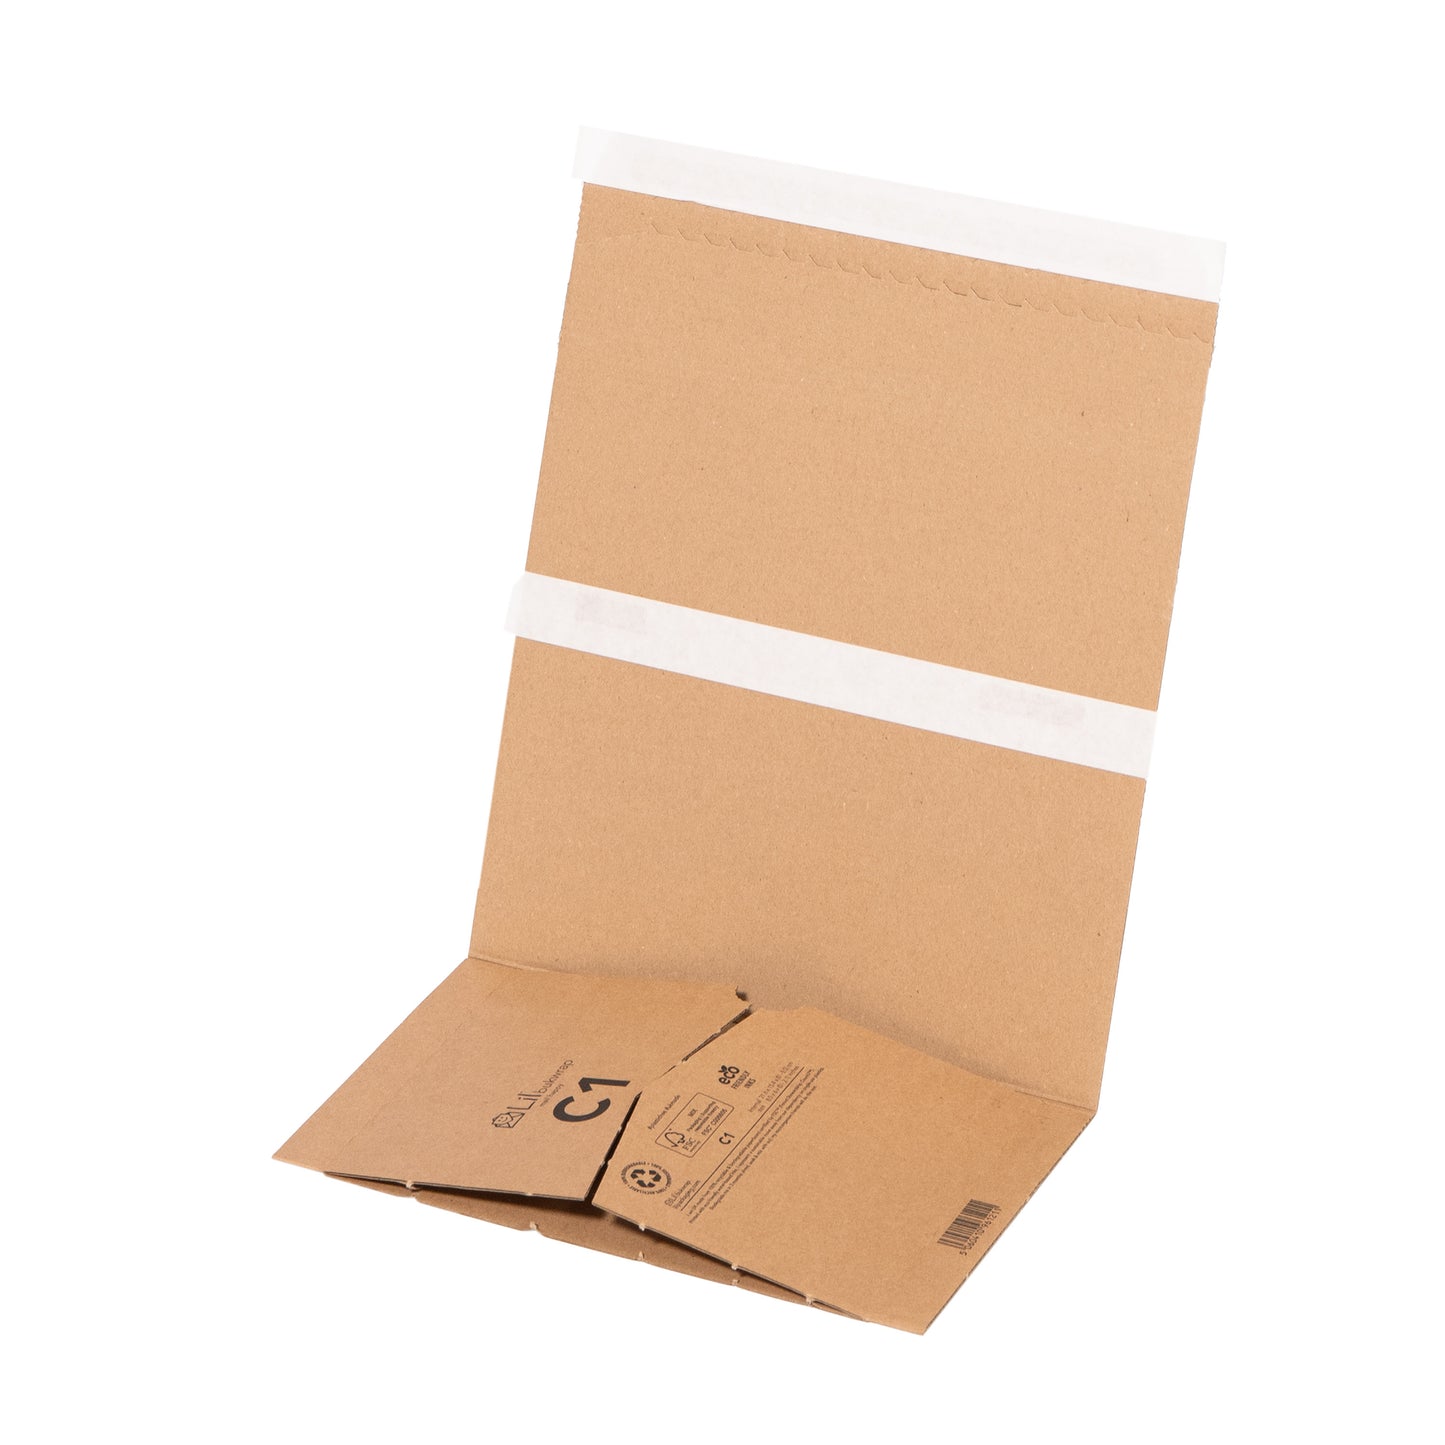 C1 Book Wraps Cardboard Packaging | Lil Packaging